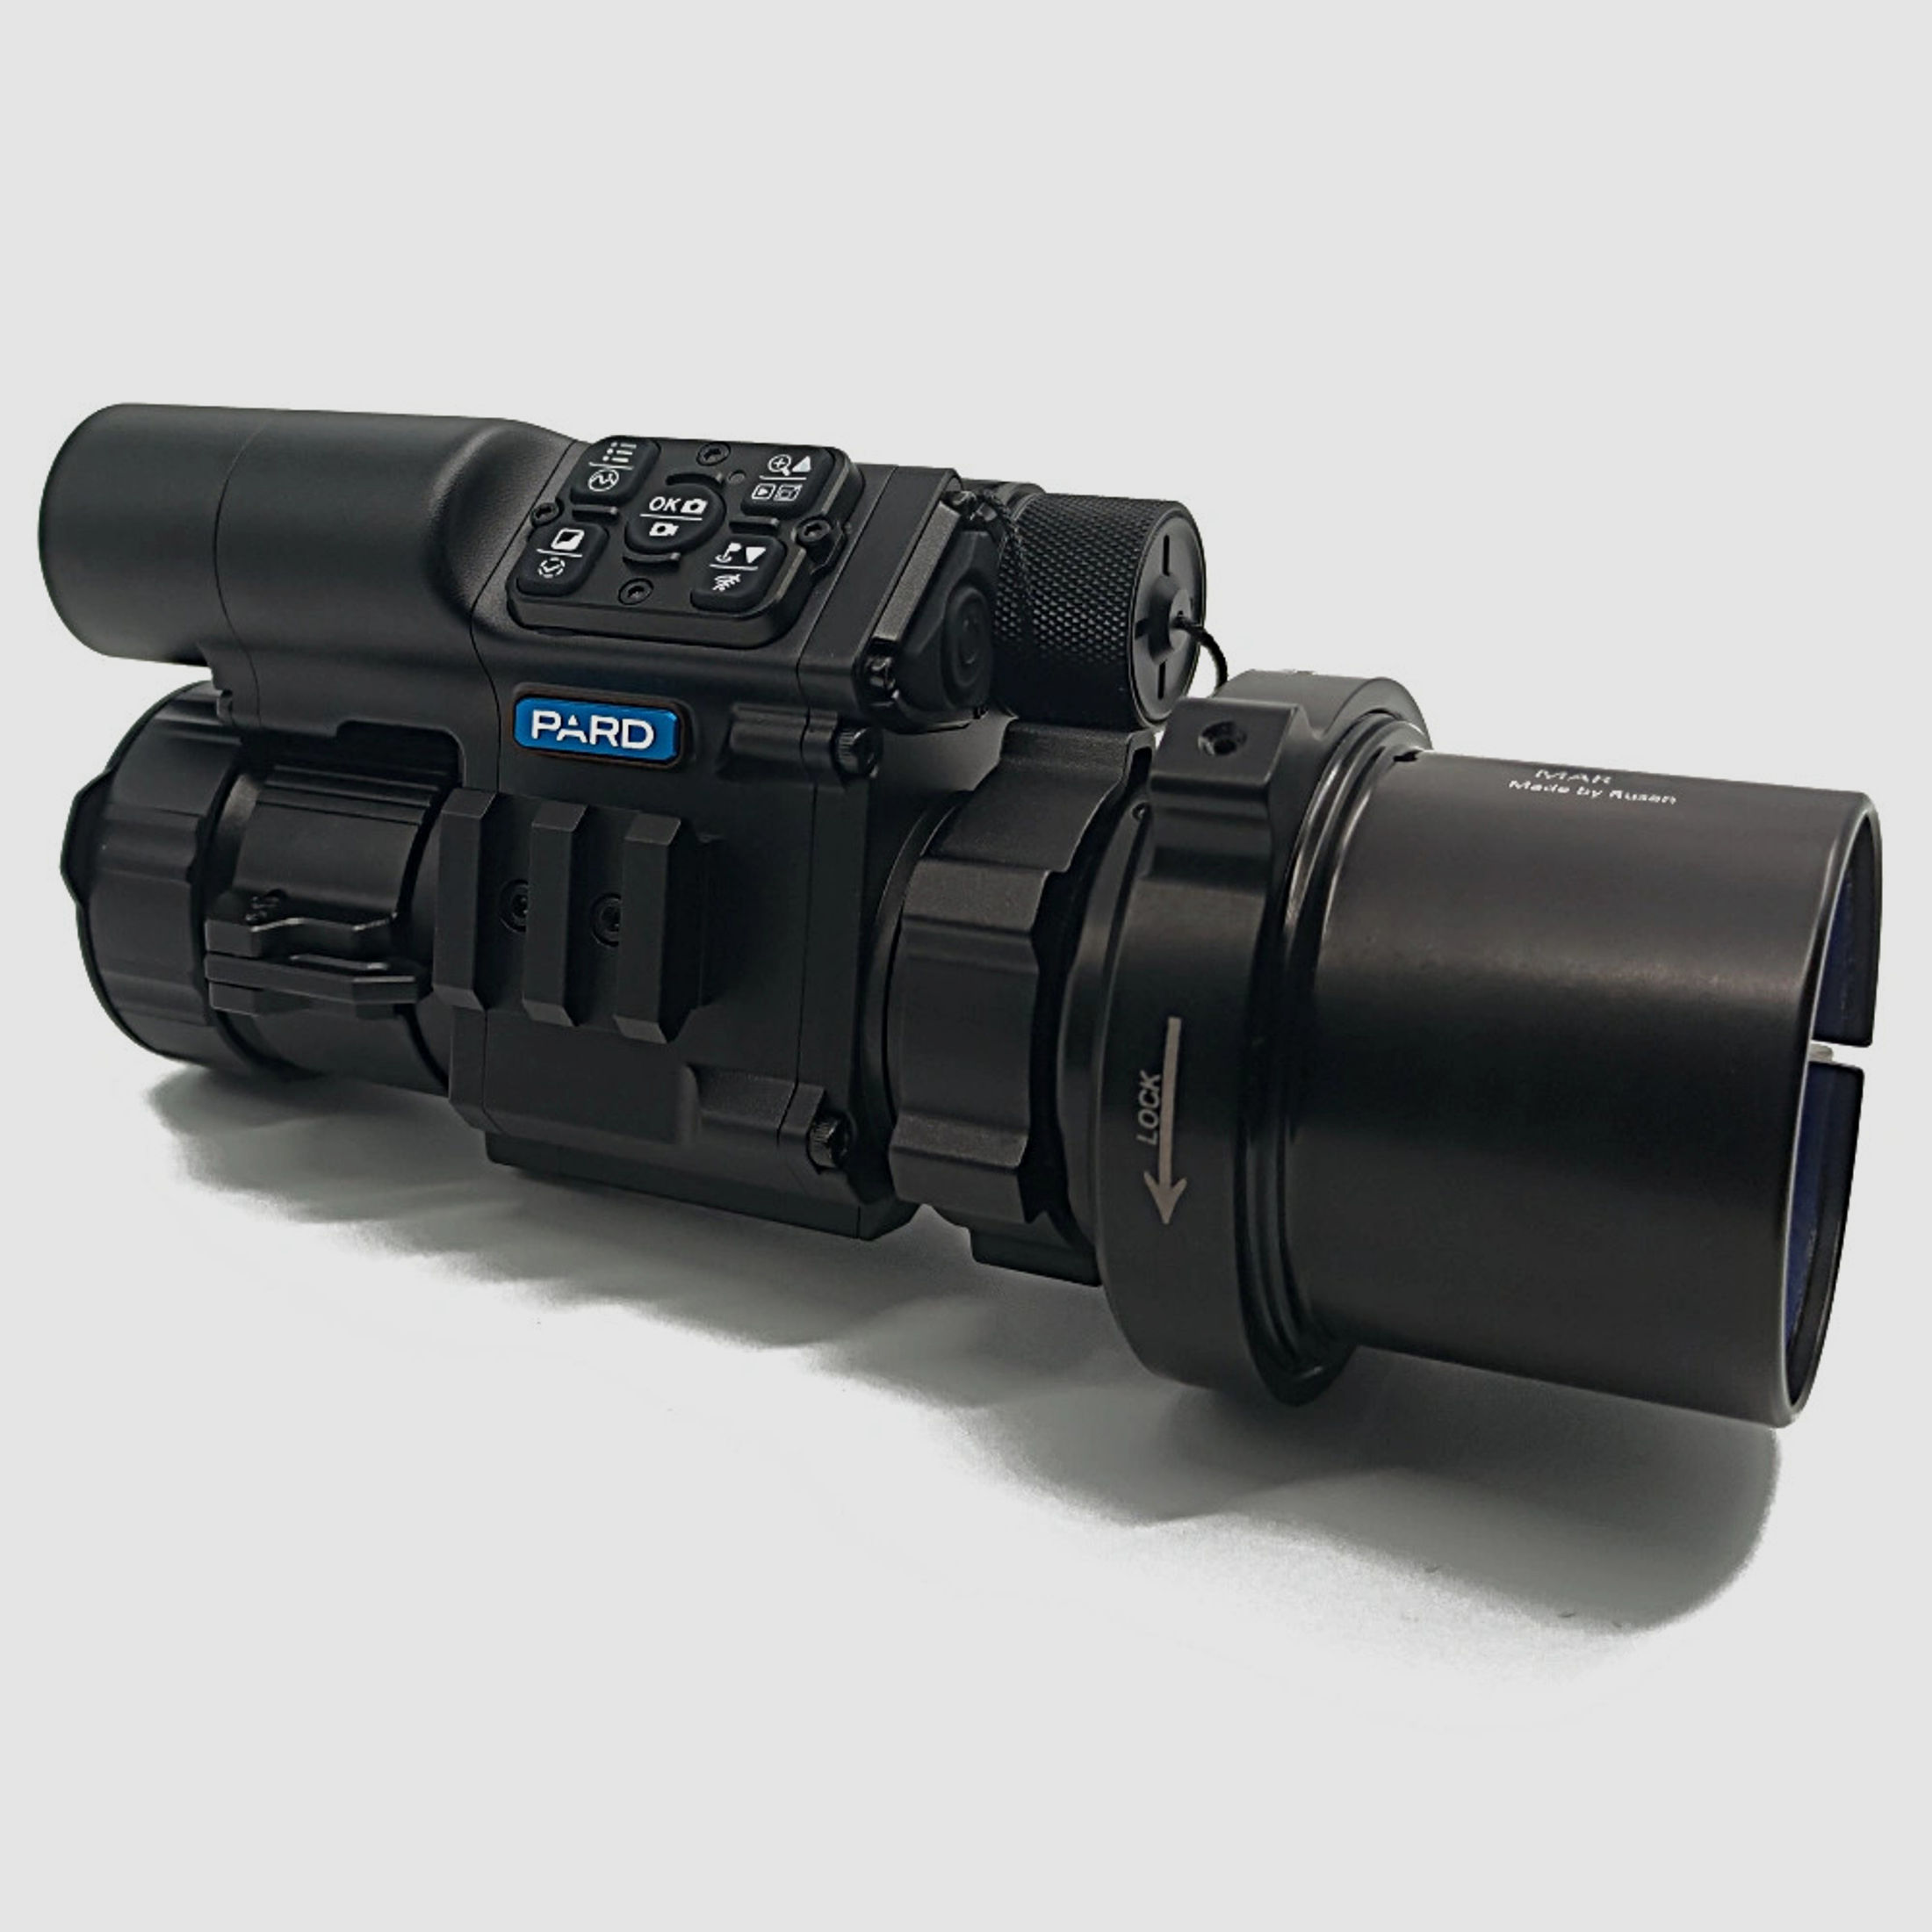 PARD FD1 Nachtsicht 3 in 1 Vorsatz, Monokular & Zielfernrohr - 850 nm mit LRF 44 mm RUSAN MAR + RUSAN MCR